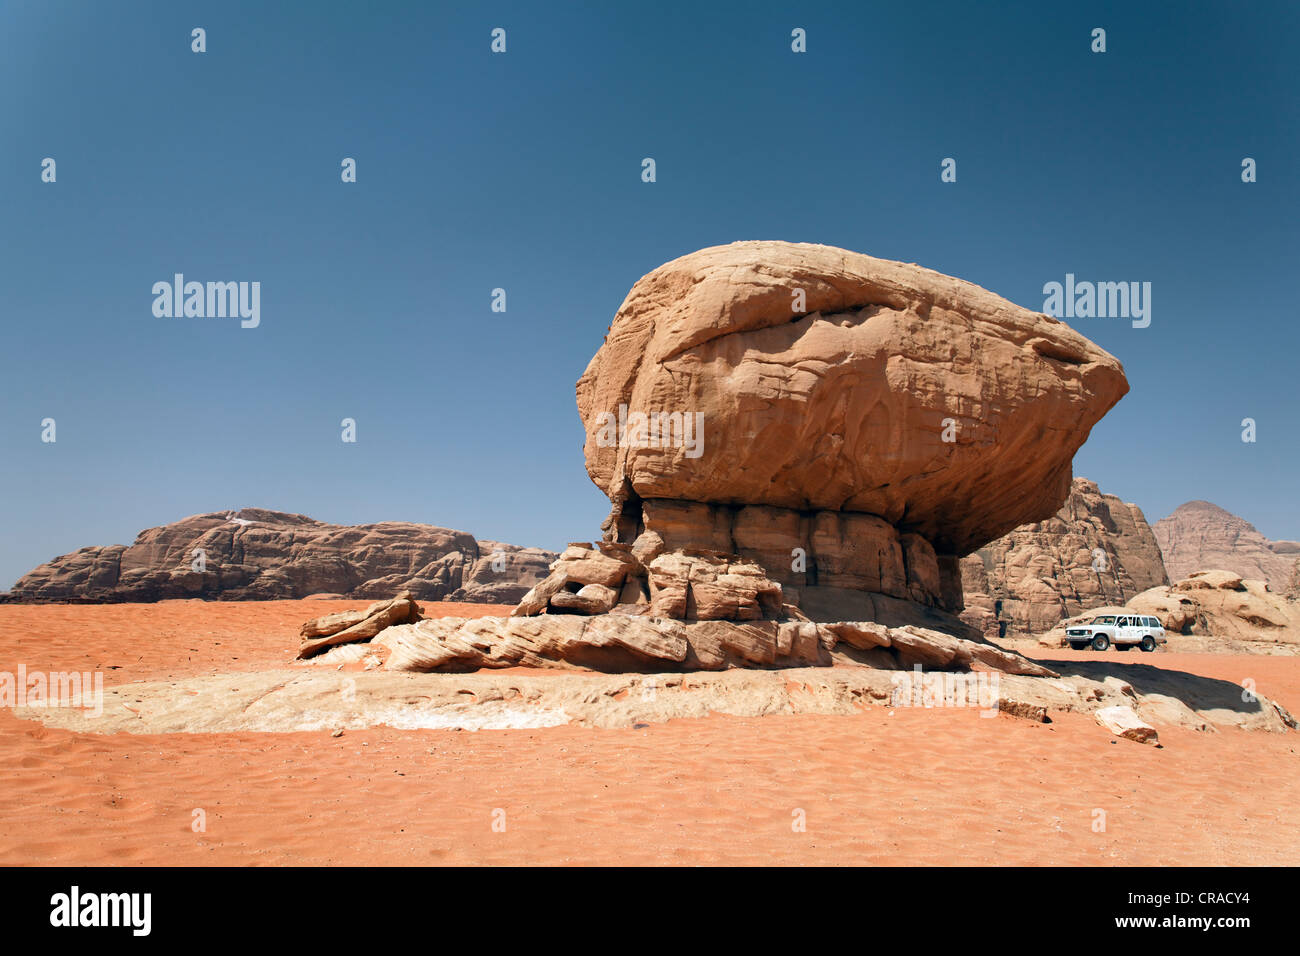 Véhicule hors route à côté d'un rocher en forme de champignon, sable rouge, désert, plaines, Wadi Rum, Royaume hachémite de Jordanie Banque D'Images